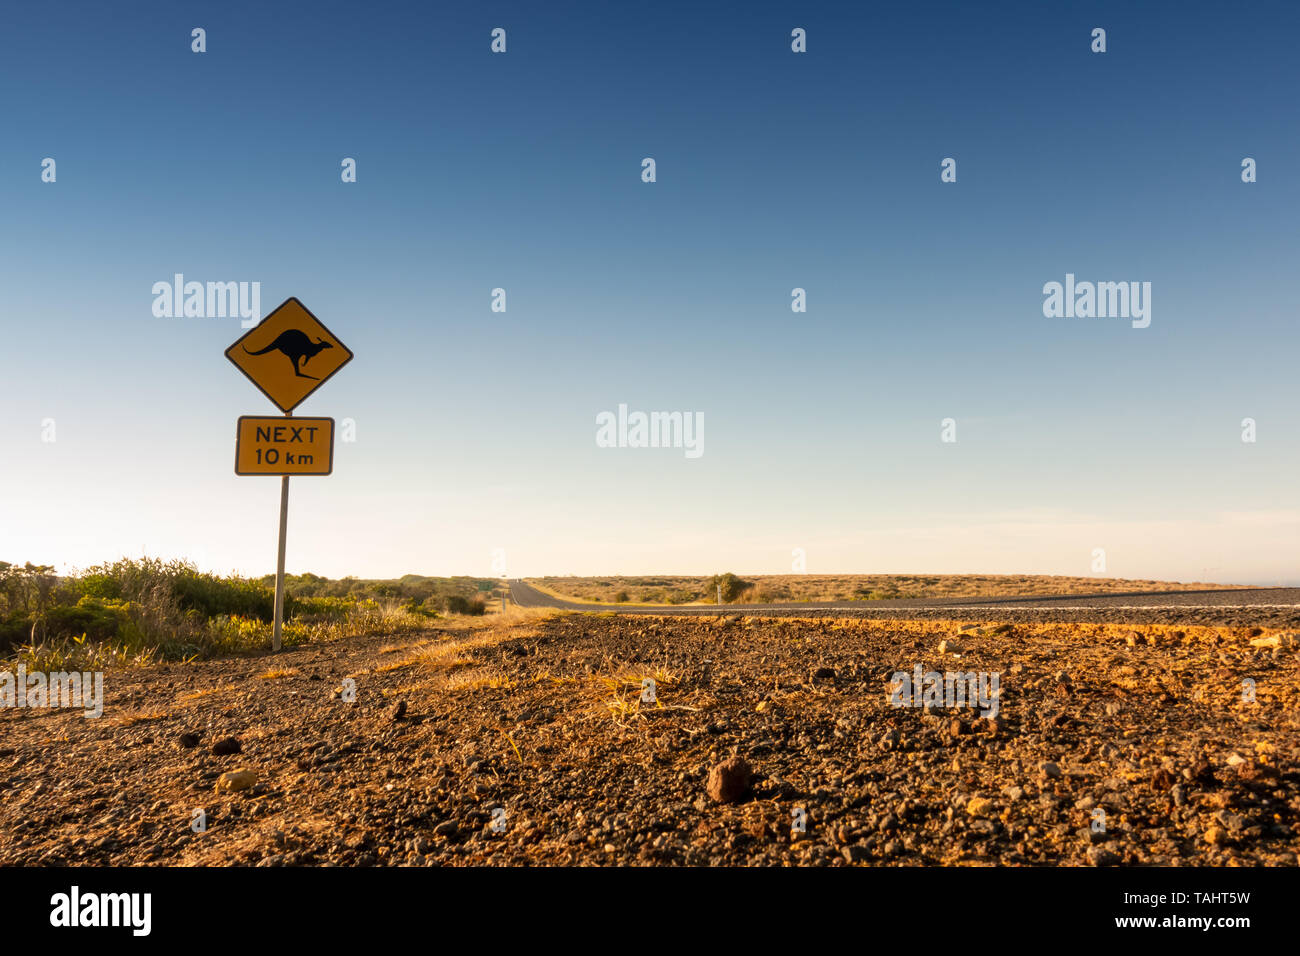 Kangaroo crossing Schild Warnung Treiber in Australien Stockfoto